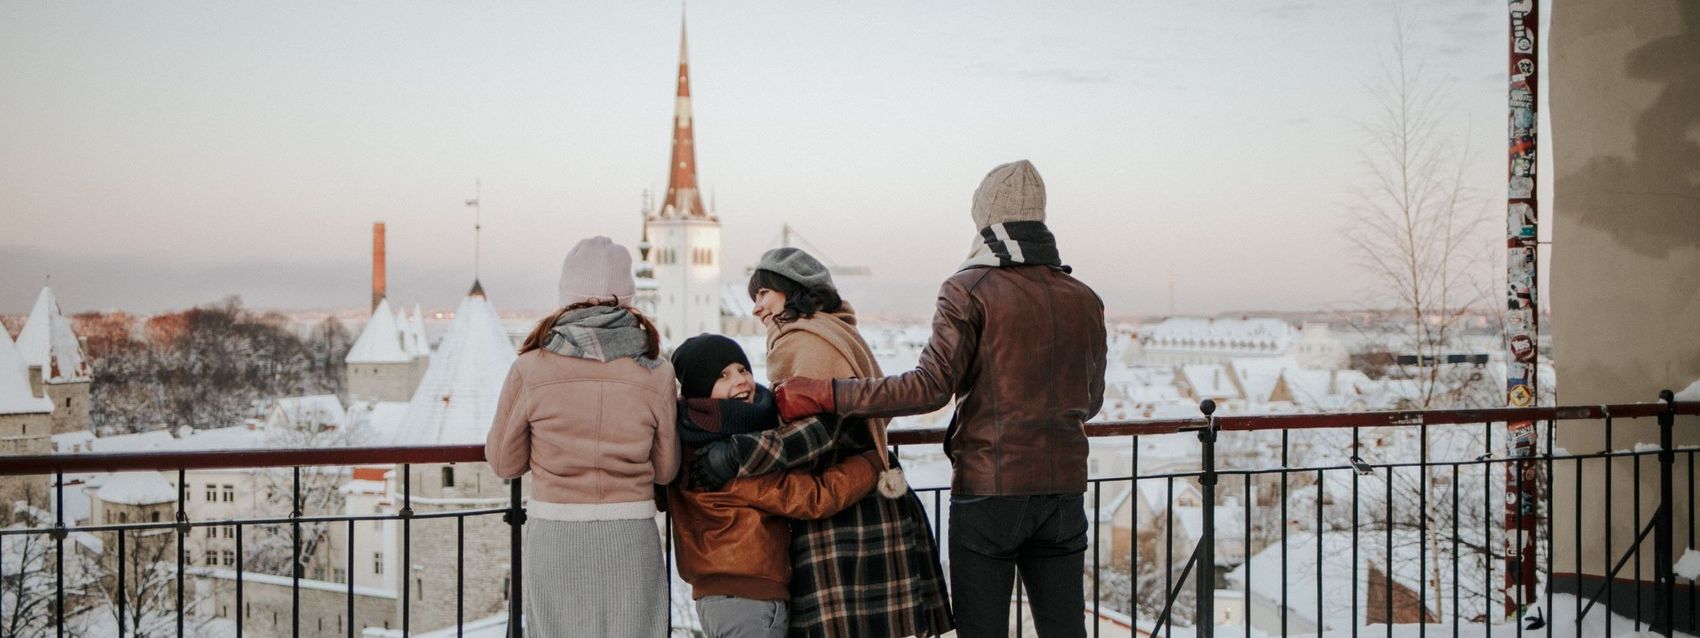 Семья смотрит на город со смотровой площадки Паткули на Вышгороде зимой. Впереди виден шпиль церкви Олевисте, Старый город, Таллинн, Эстония